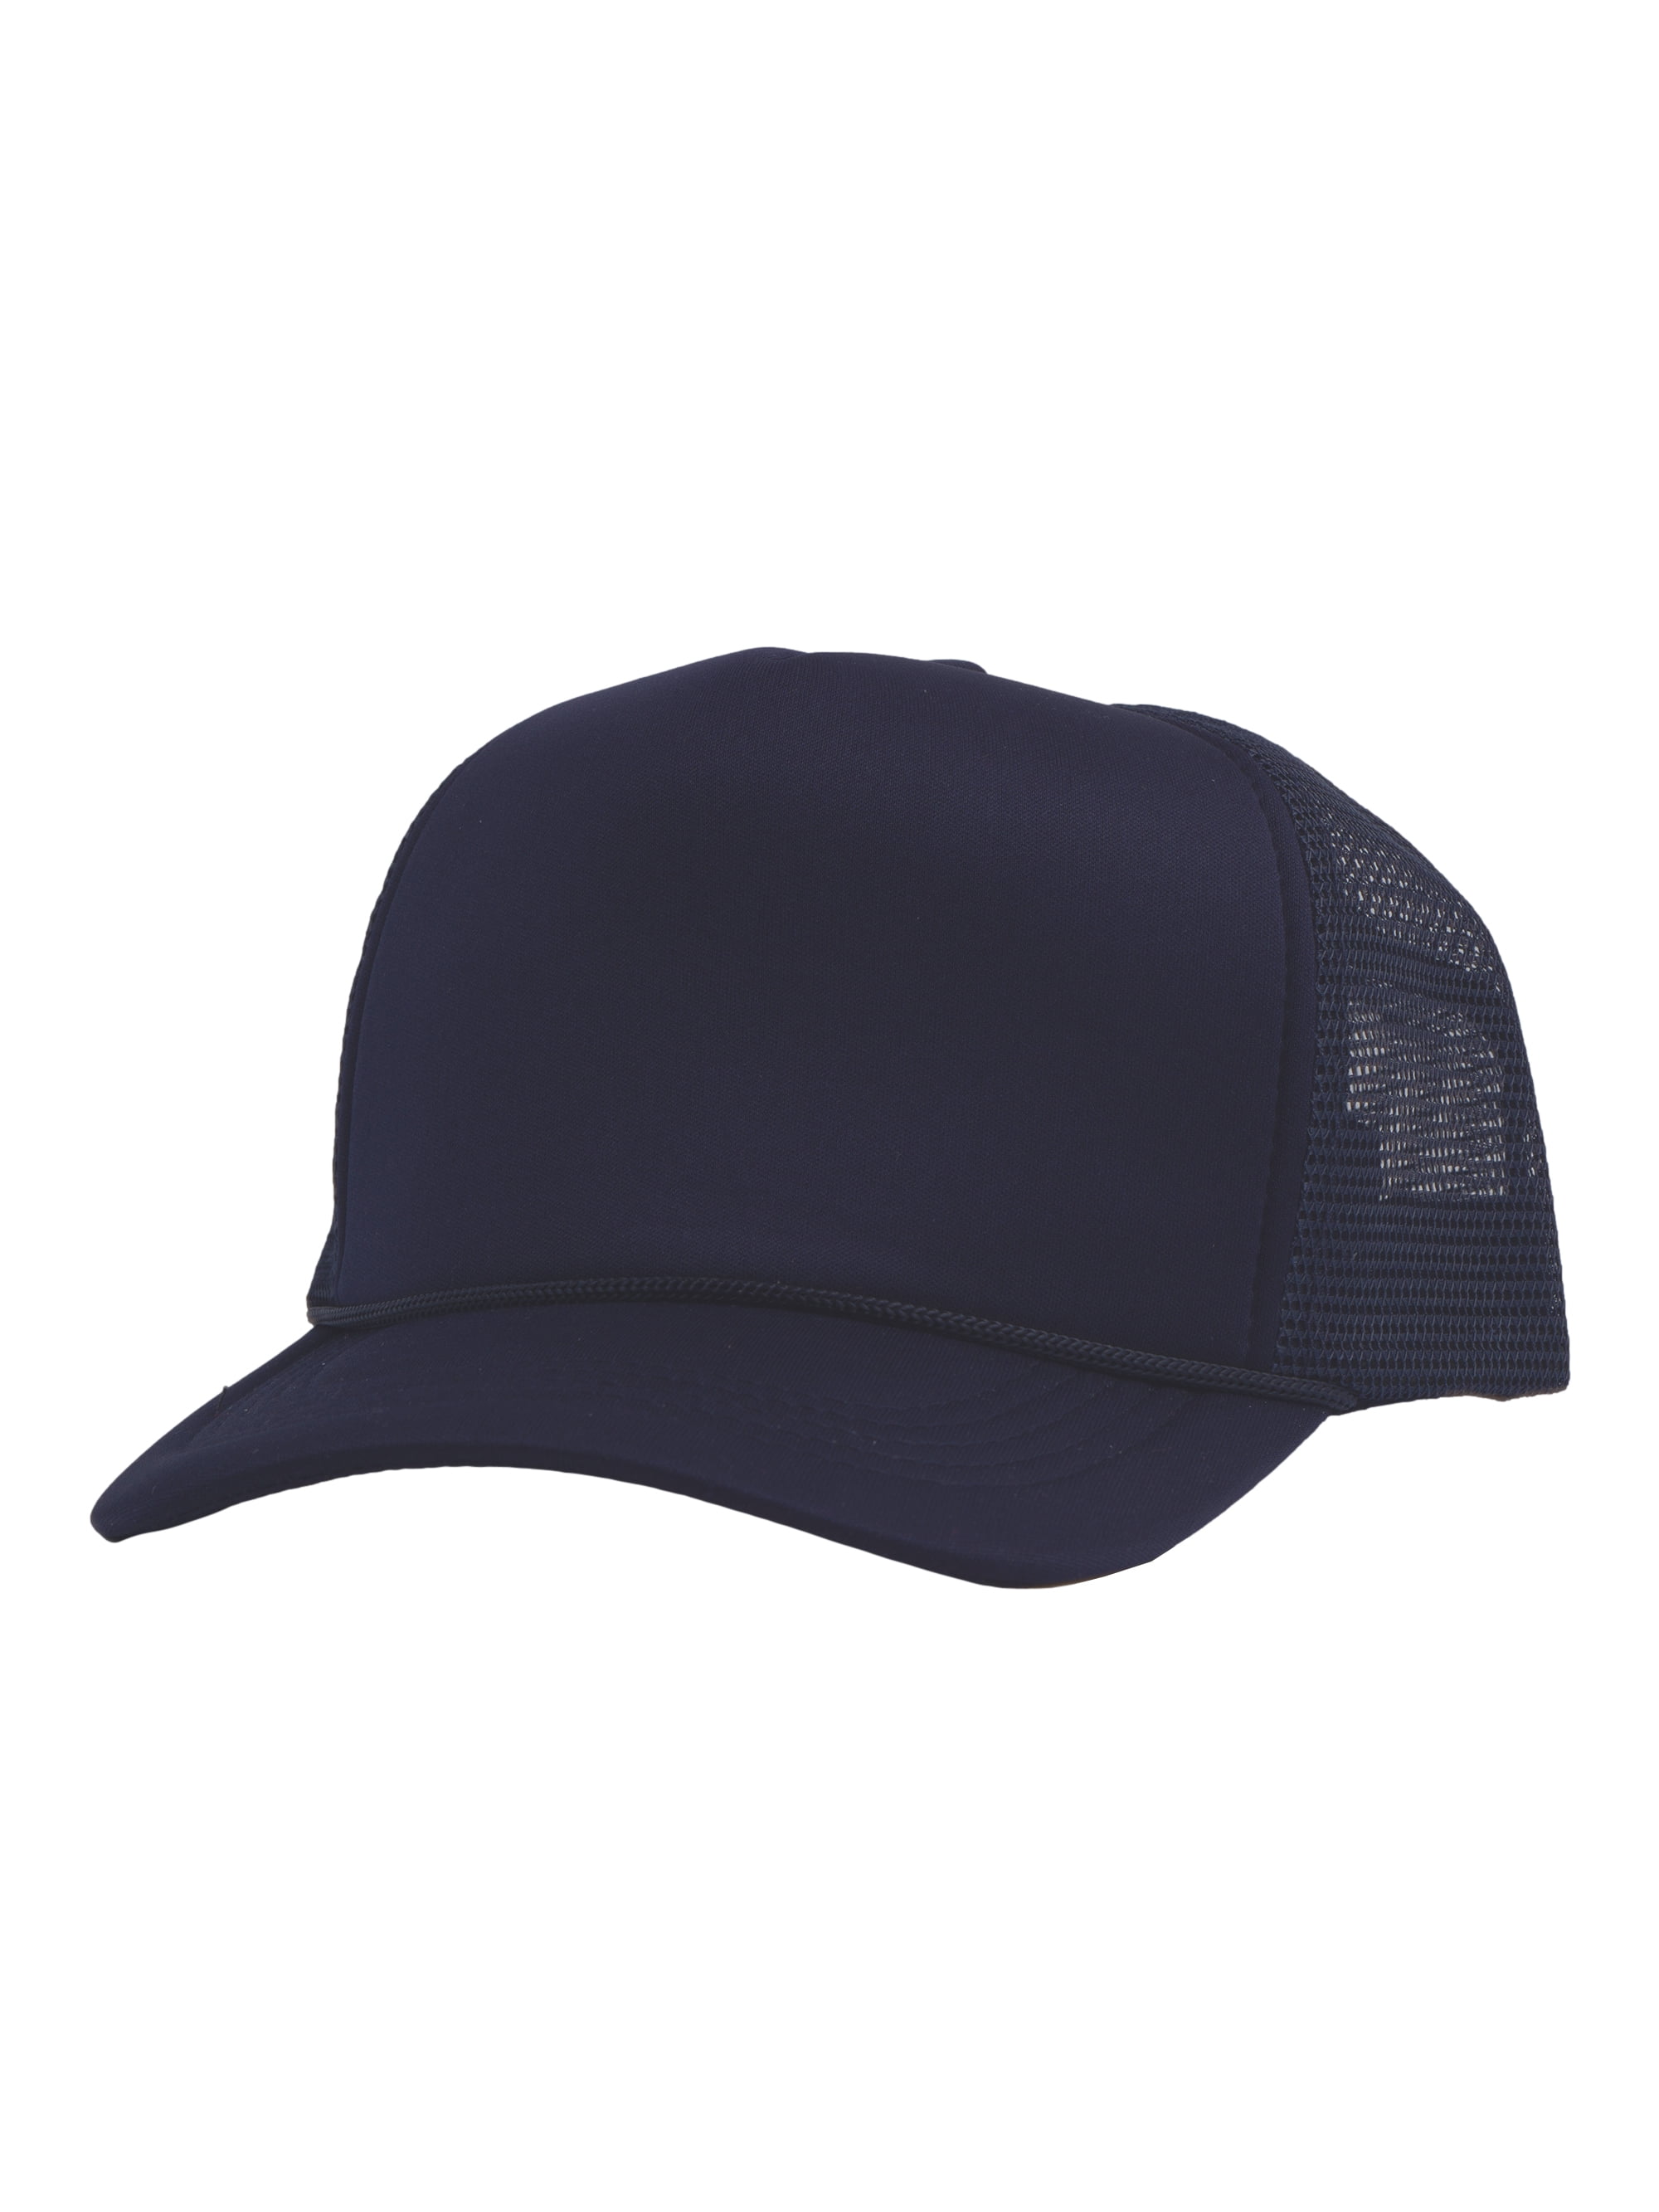 Top Headwear Blank Trucker Hat - Mens Trucker Hats Foam Mesh Snapback Navy